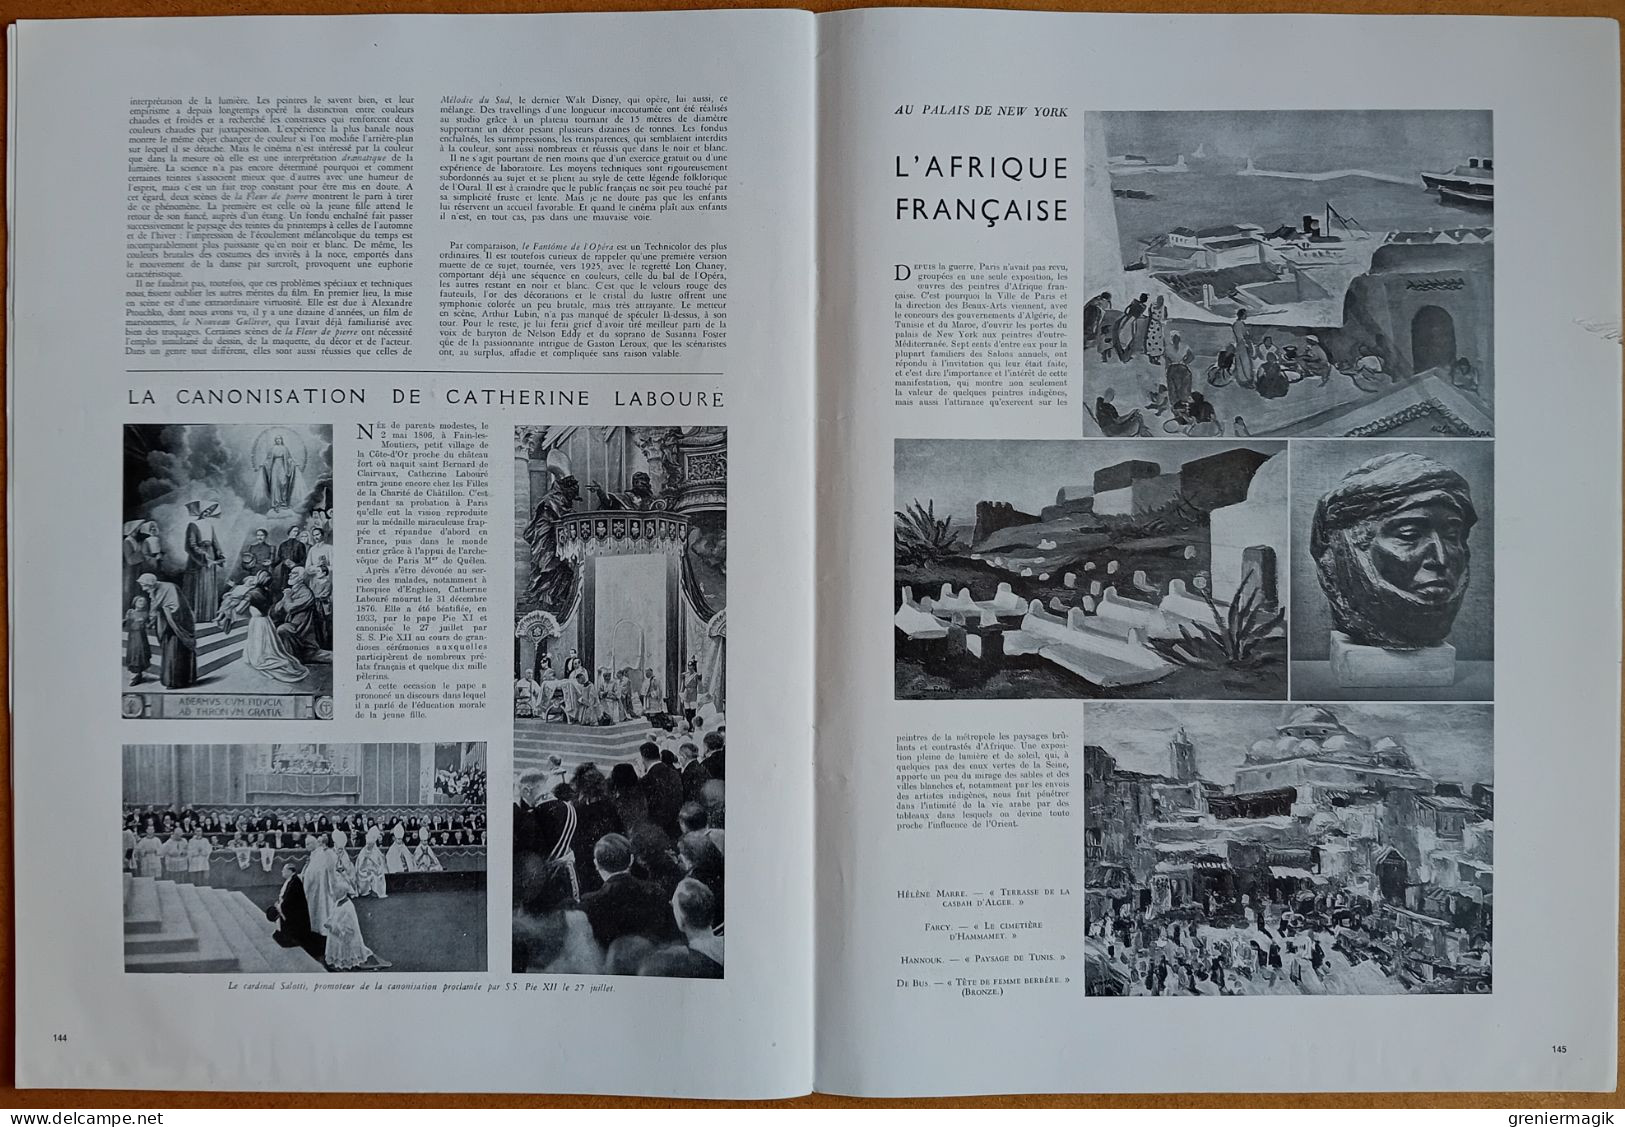 France Illustration N°97 09/08/1947 Catastrophe de Brest/Indonésie/Palestine Exodus-1947/Guides de haute montagne